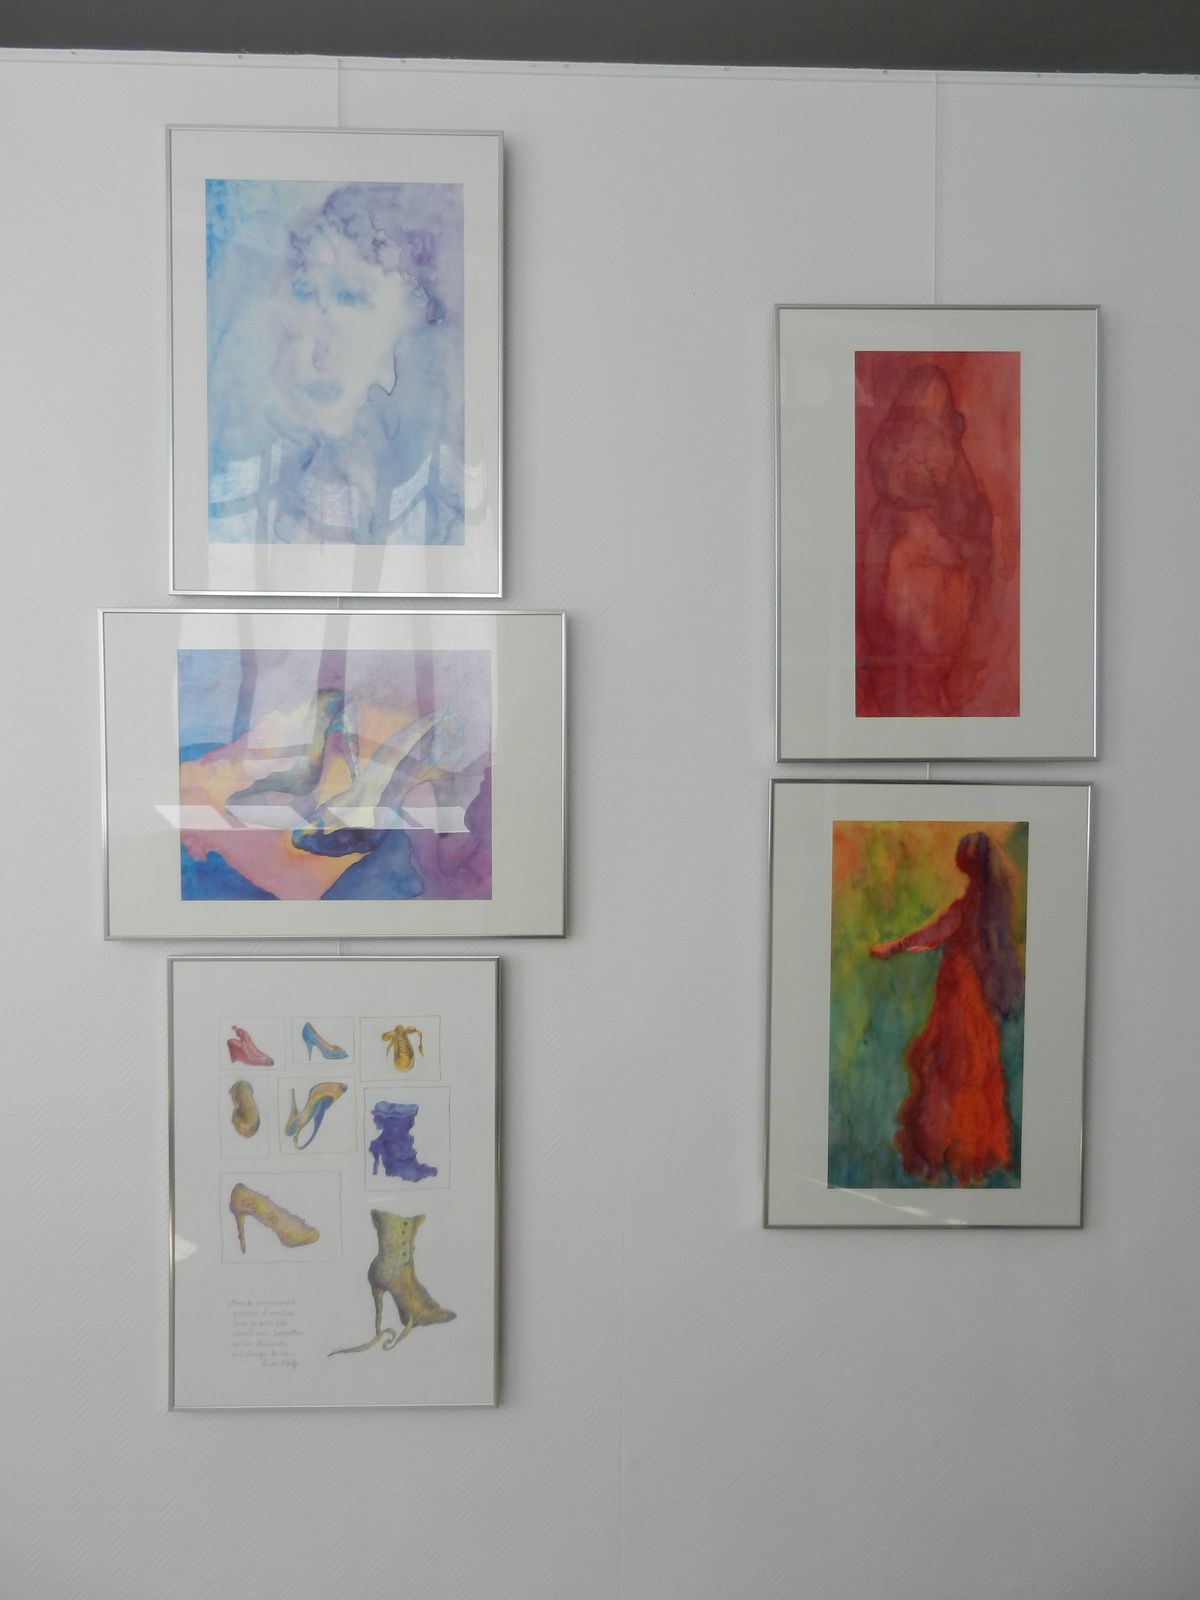 Exposition de Livia Walczak à l'atelier et espace d'exposition  "Le corridor", Liverdun (54)